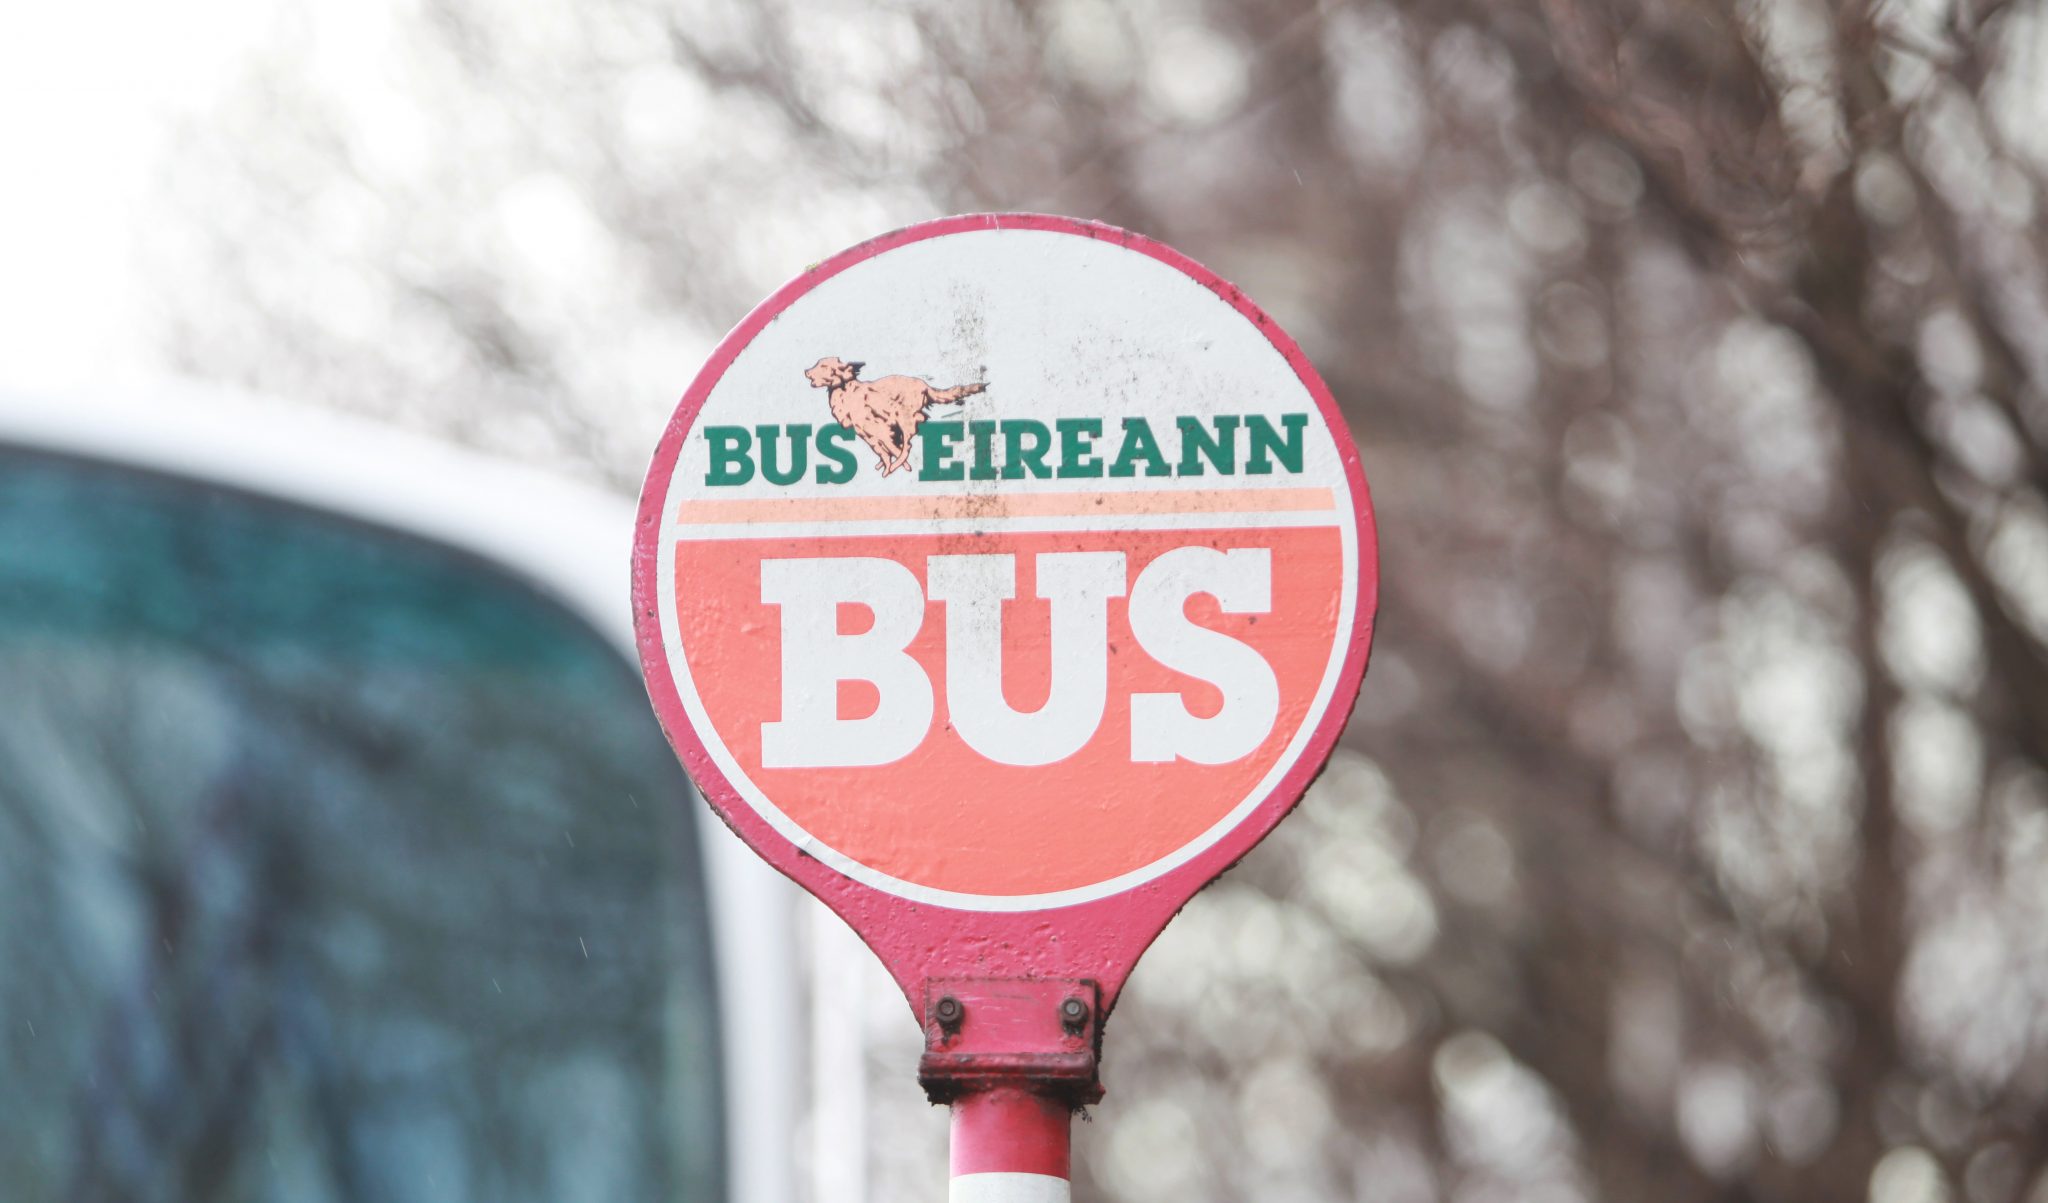 Bus Éireann bus stop